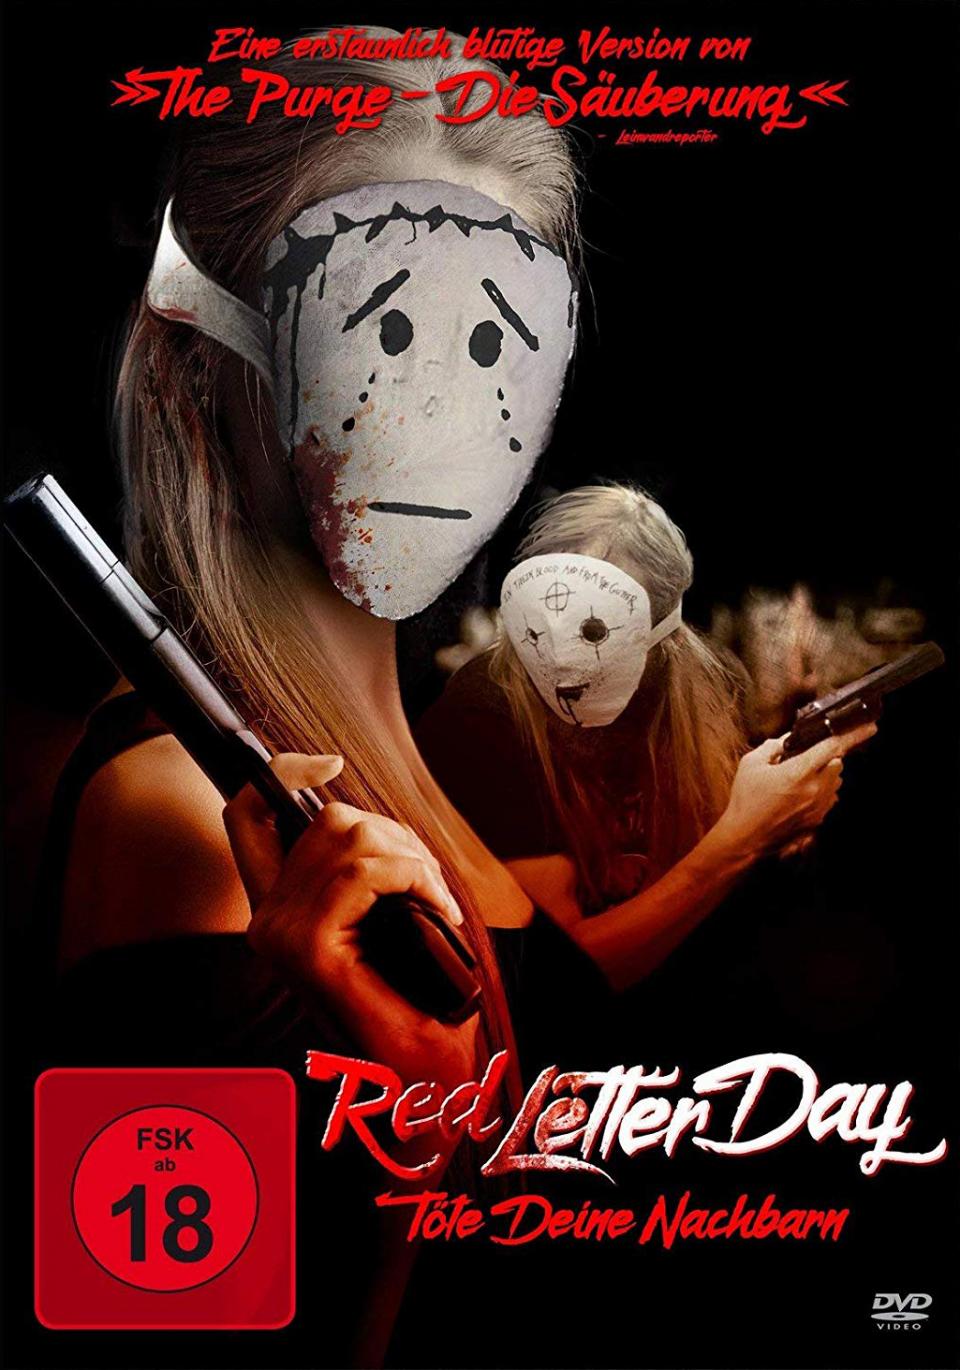 Red Letter Day - Töte deine Nachbarn - DVD Cover